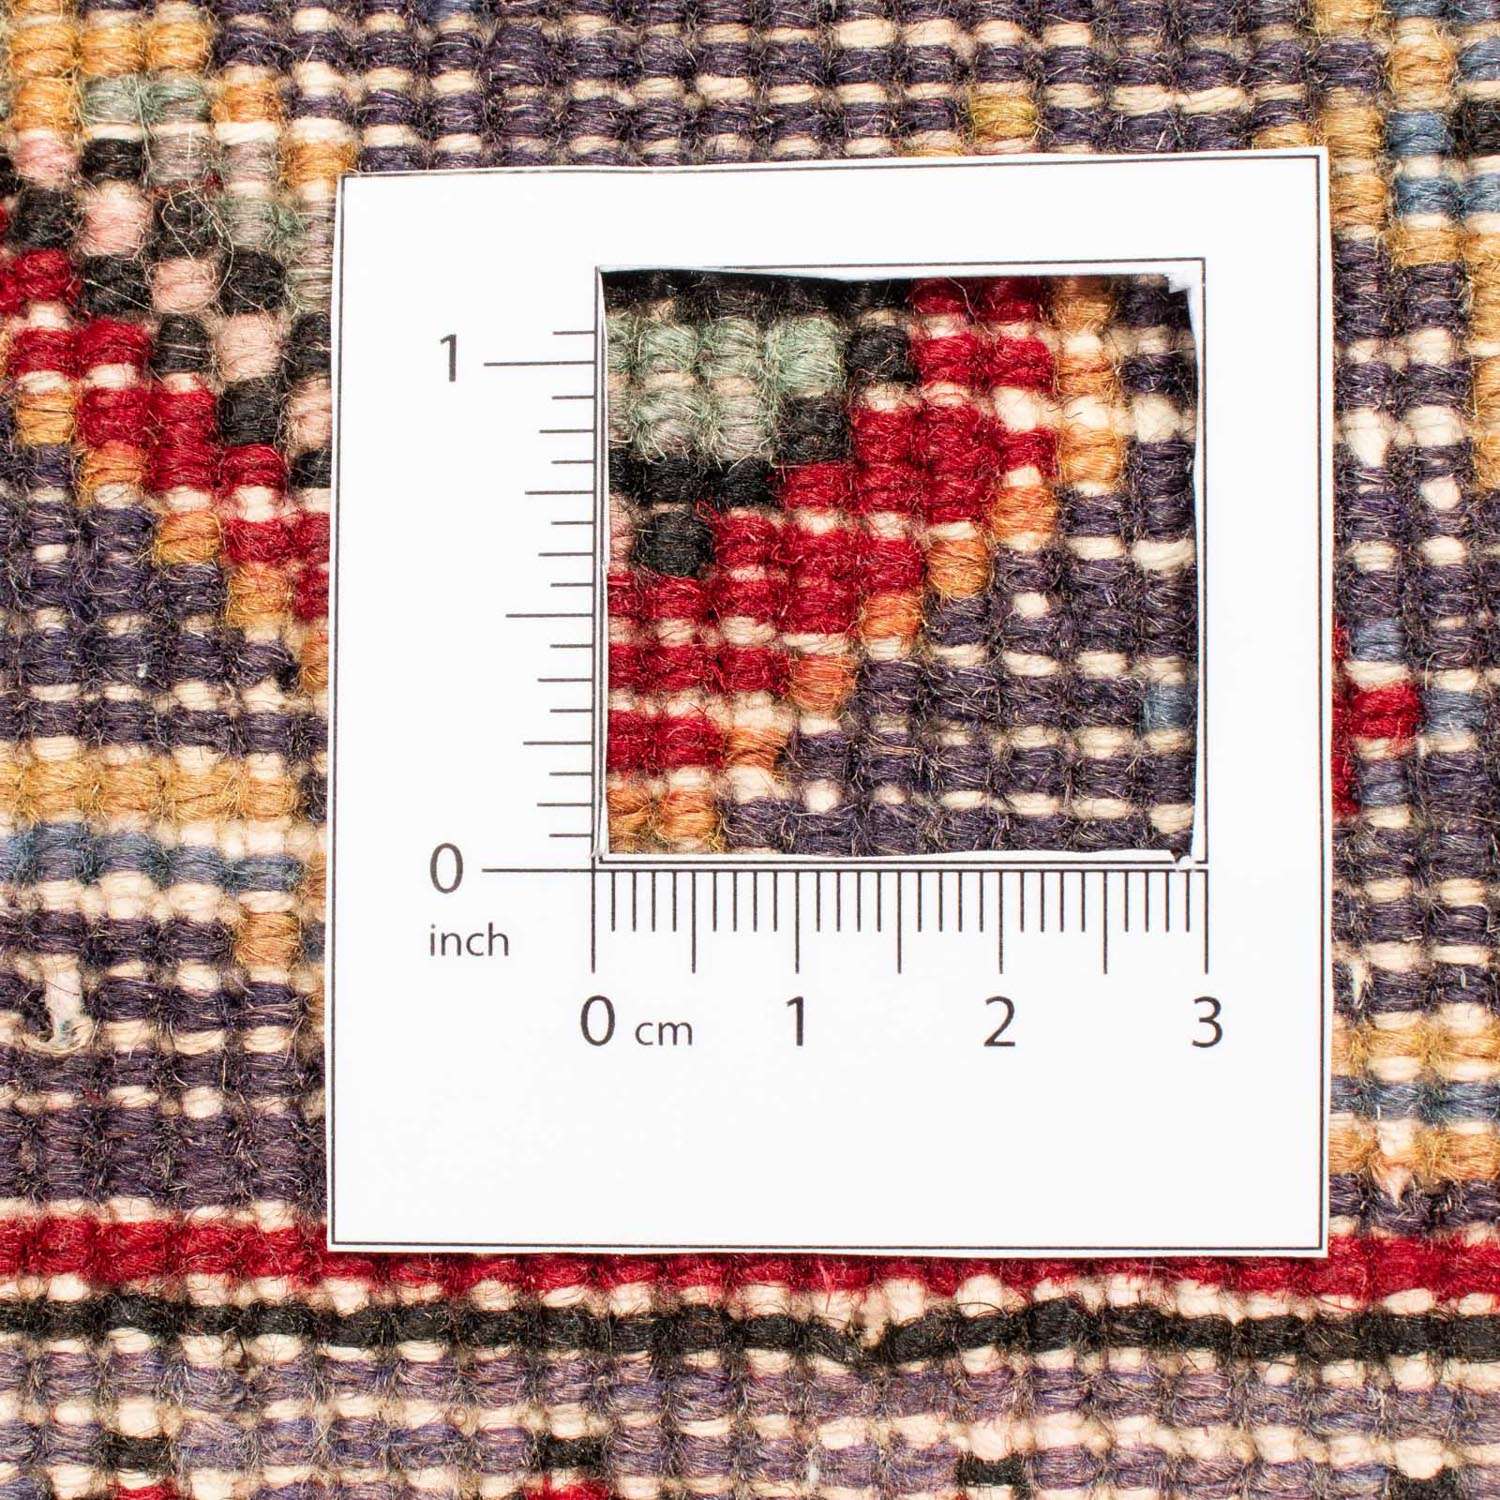 Persisk teppe - Nomadisk - 292 x 190 cm - rød